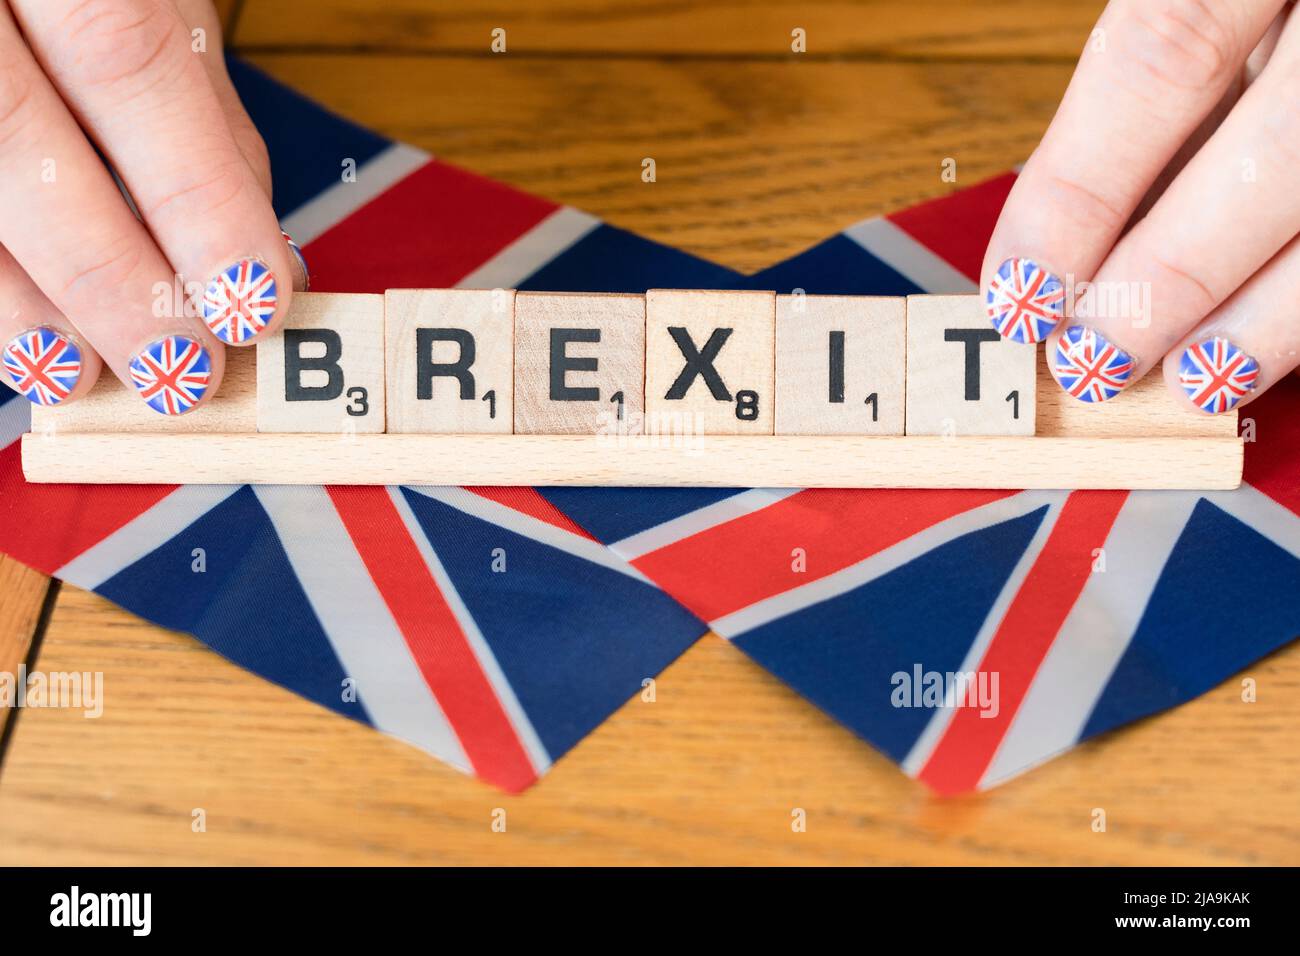 Uñas de mujer decoradas con Union Jacks sosteniendo cartas de rastrojo que explicaban el Brexit sobre banderas británicas. Concepto: Celebración del Brexit Foto de stock